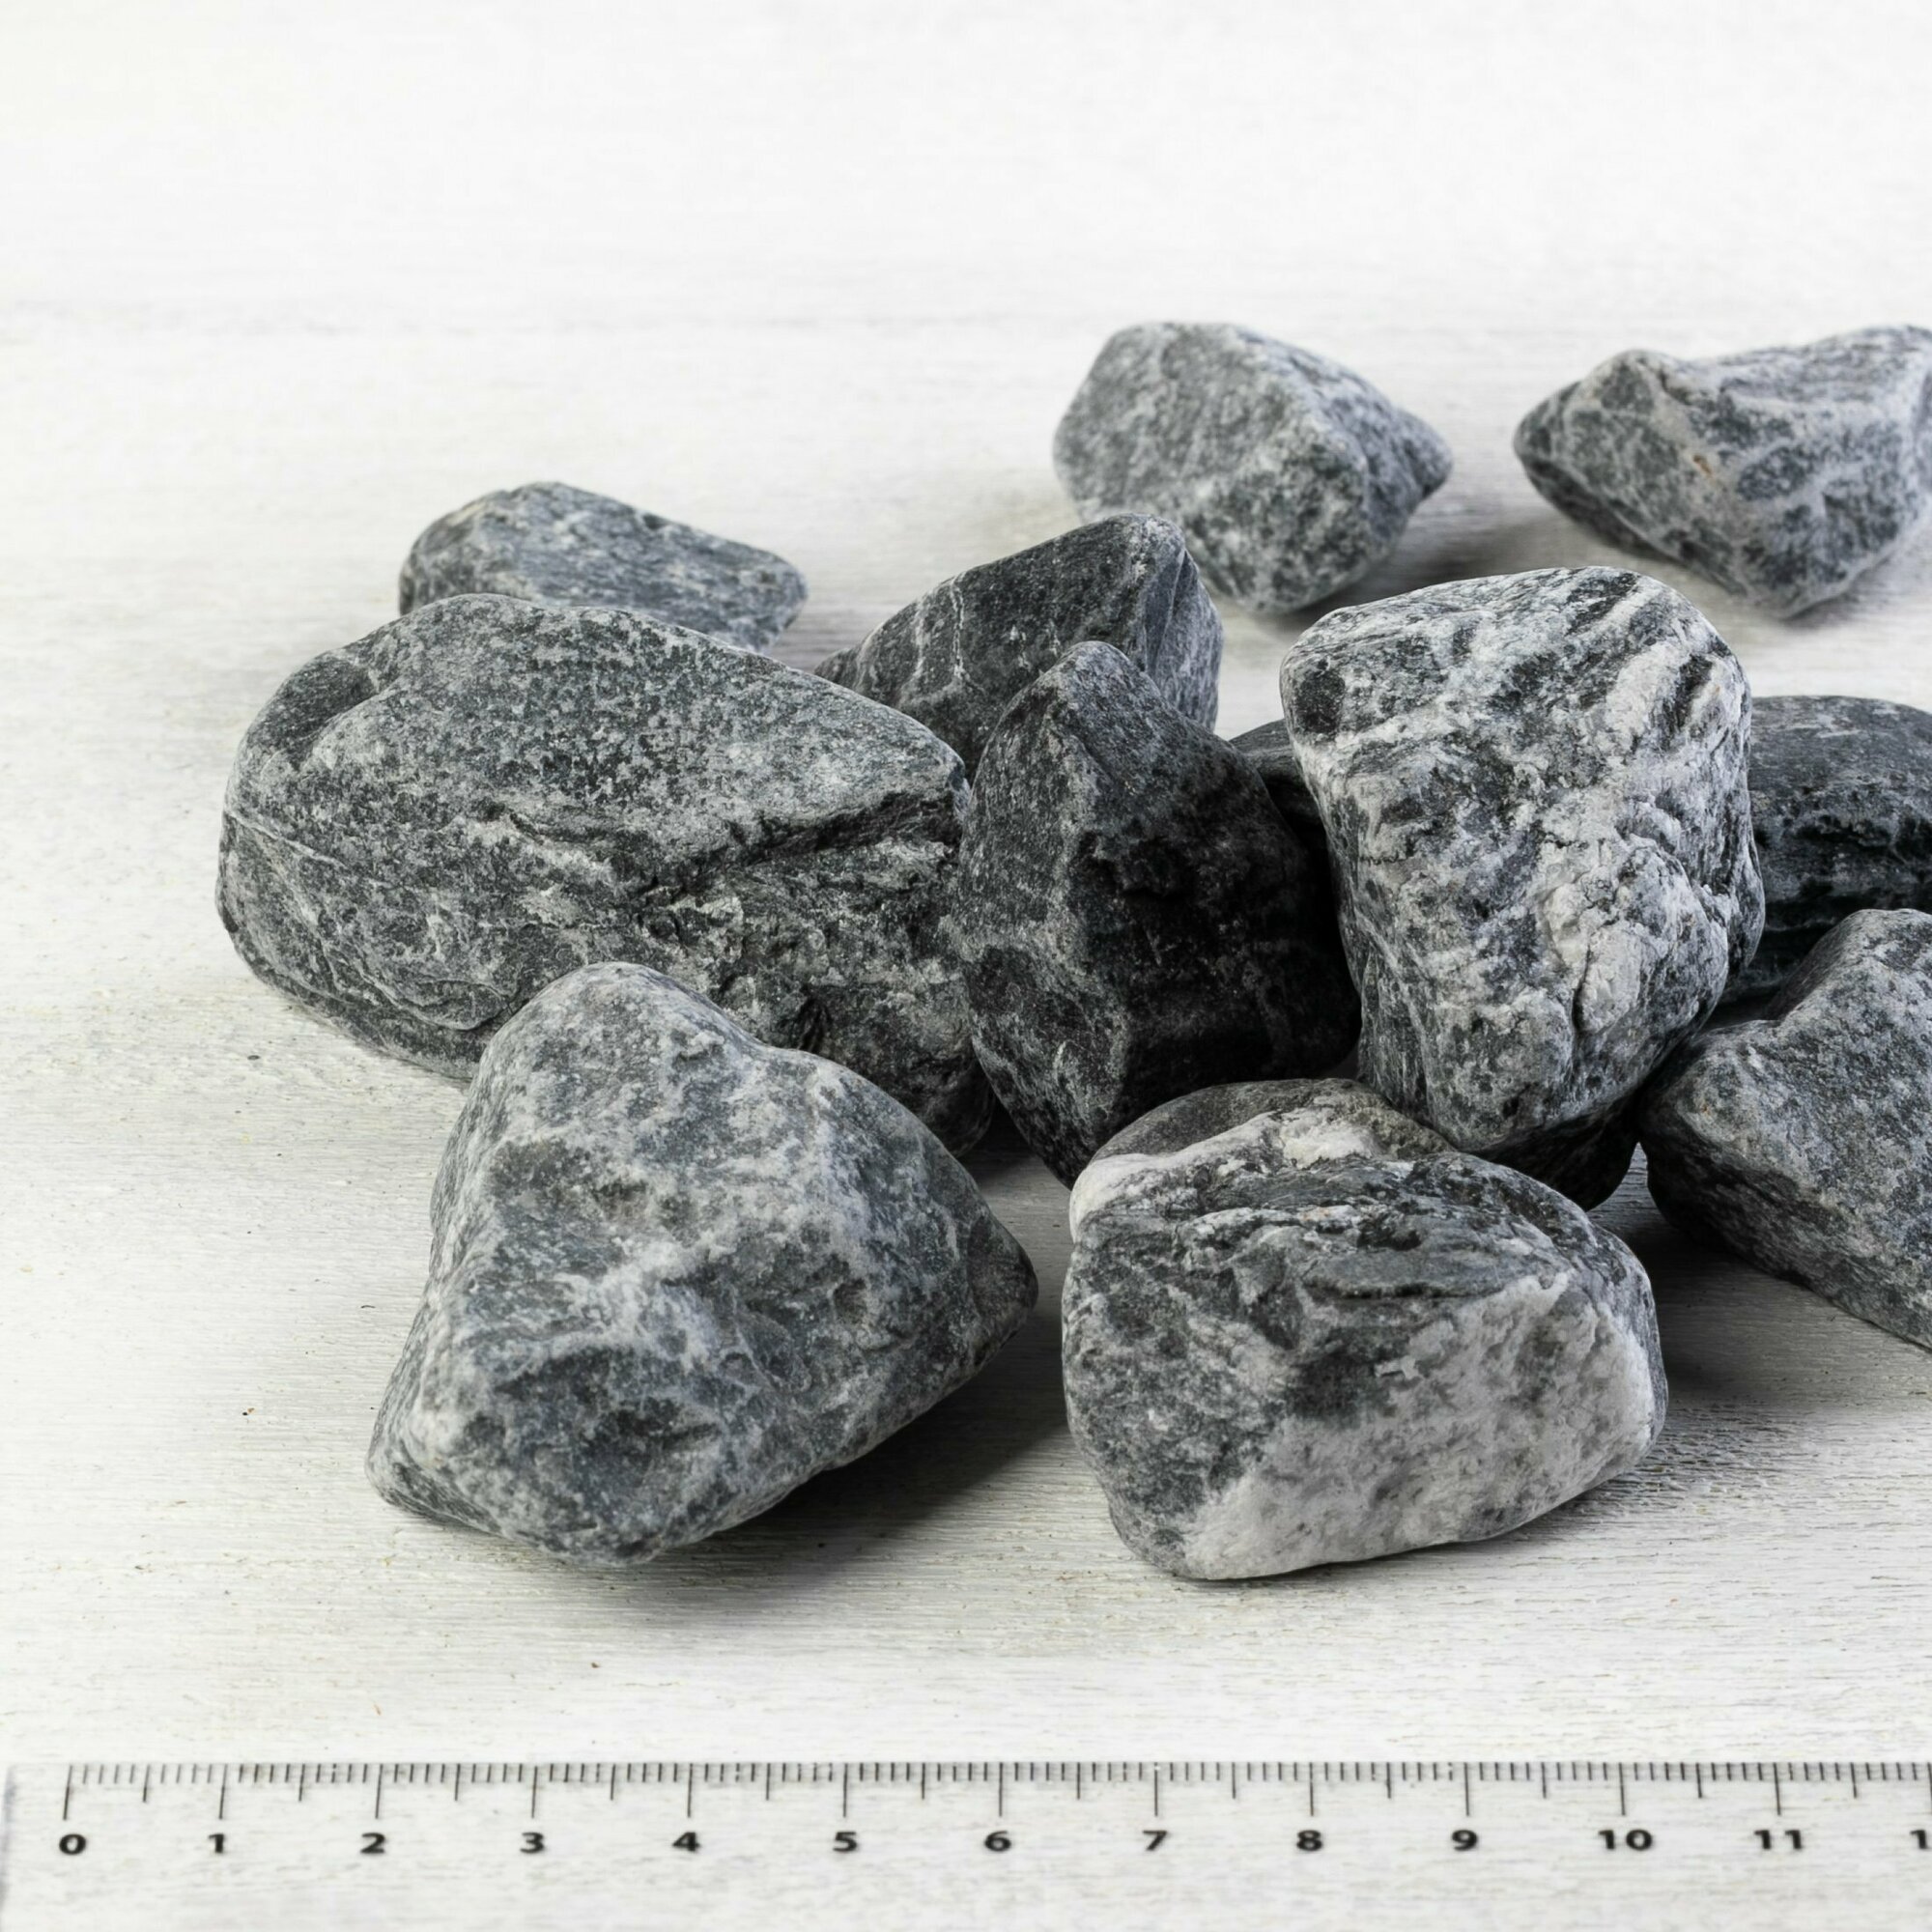 Камень ландшафтный мрамор черный Доломит, фракция 20-40 мм 3 кг (319N). Декоративный грунт, натуральный камень